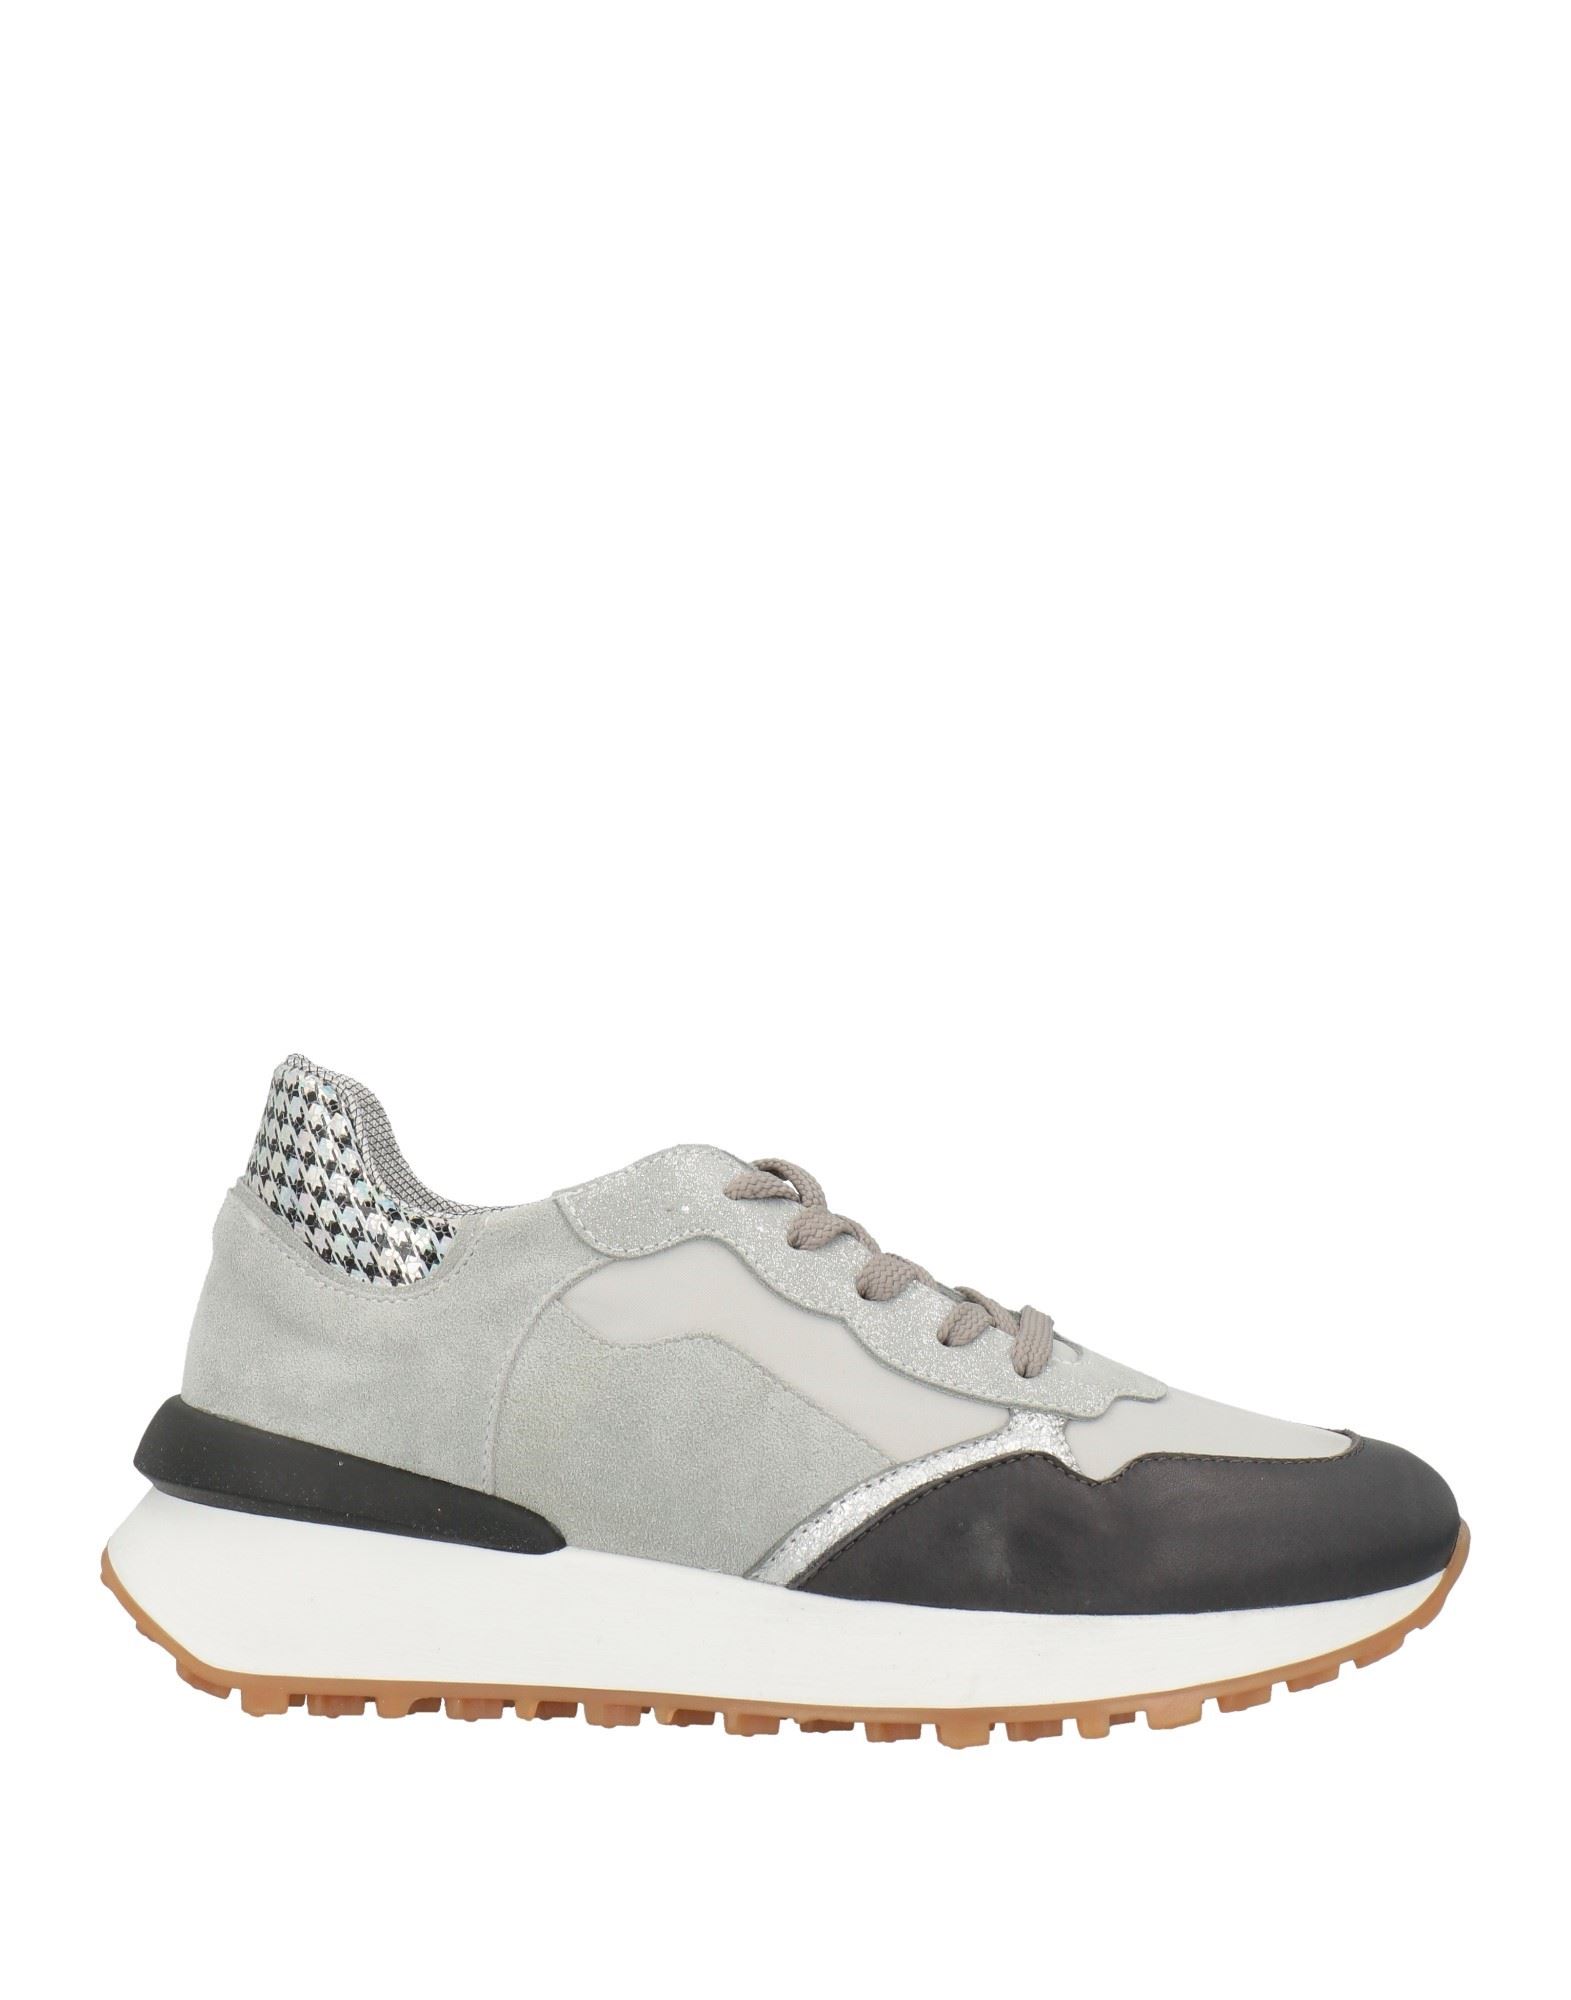 Tsd12 Sneakers In Grey